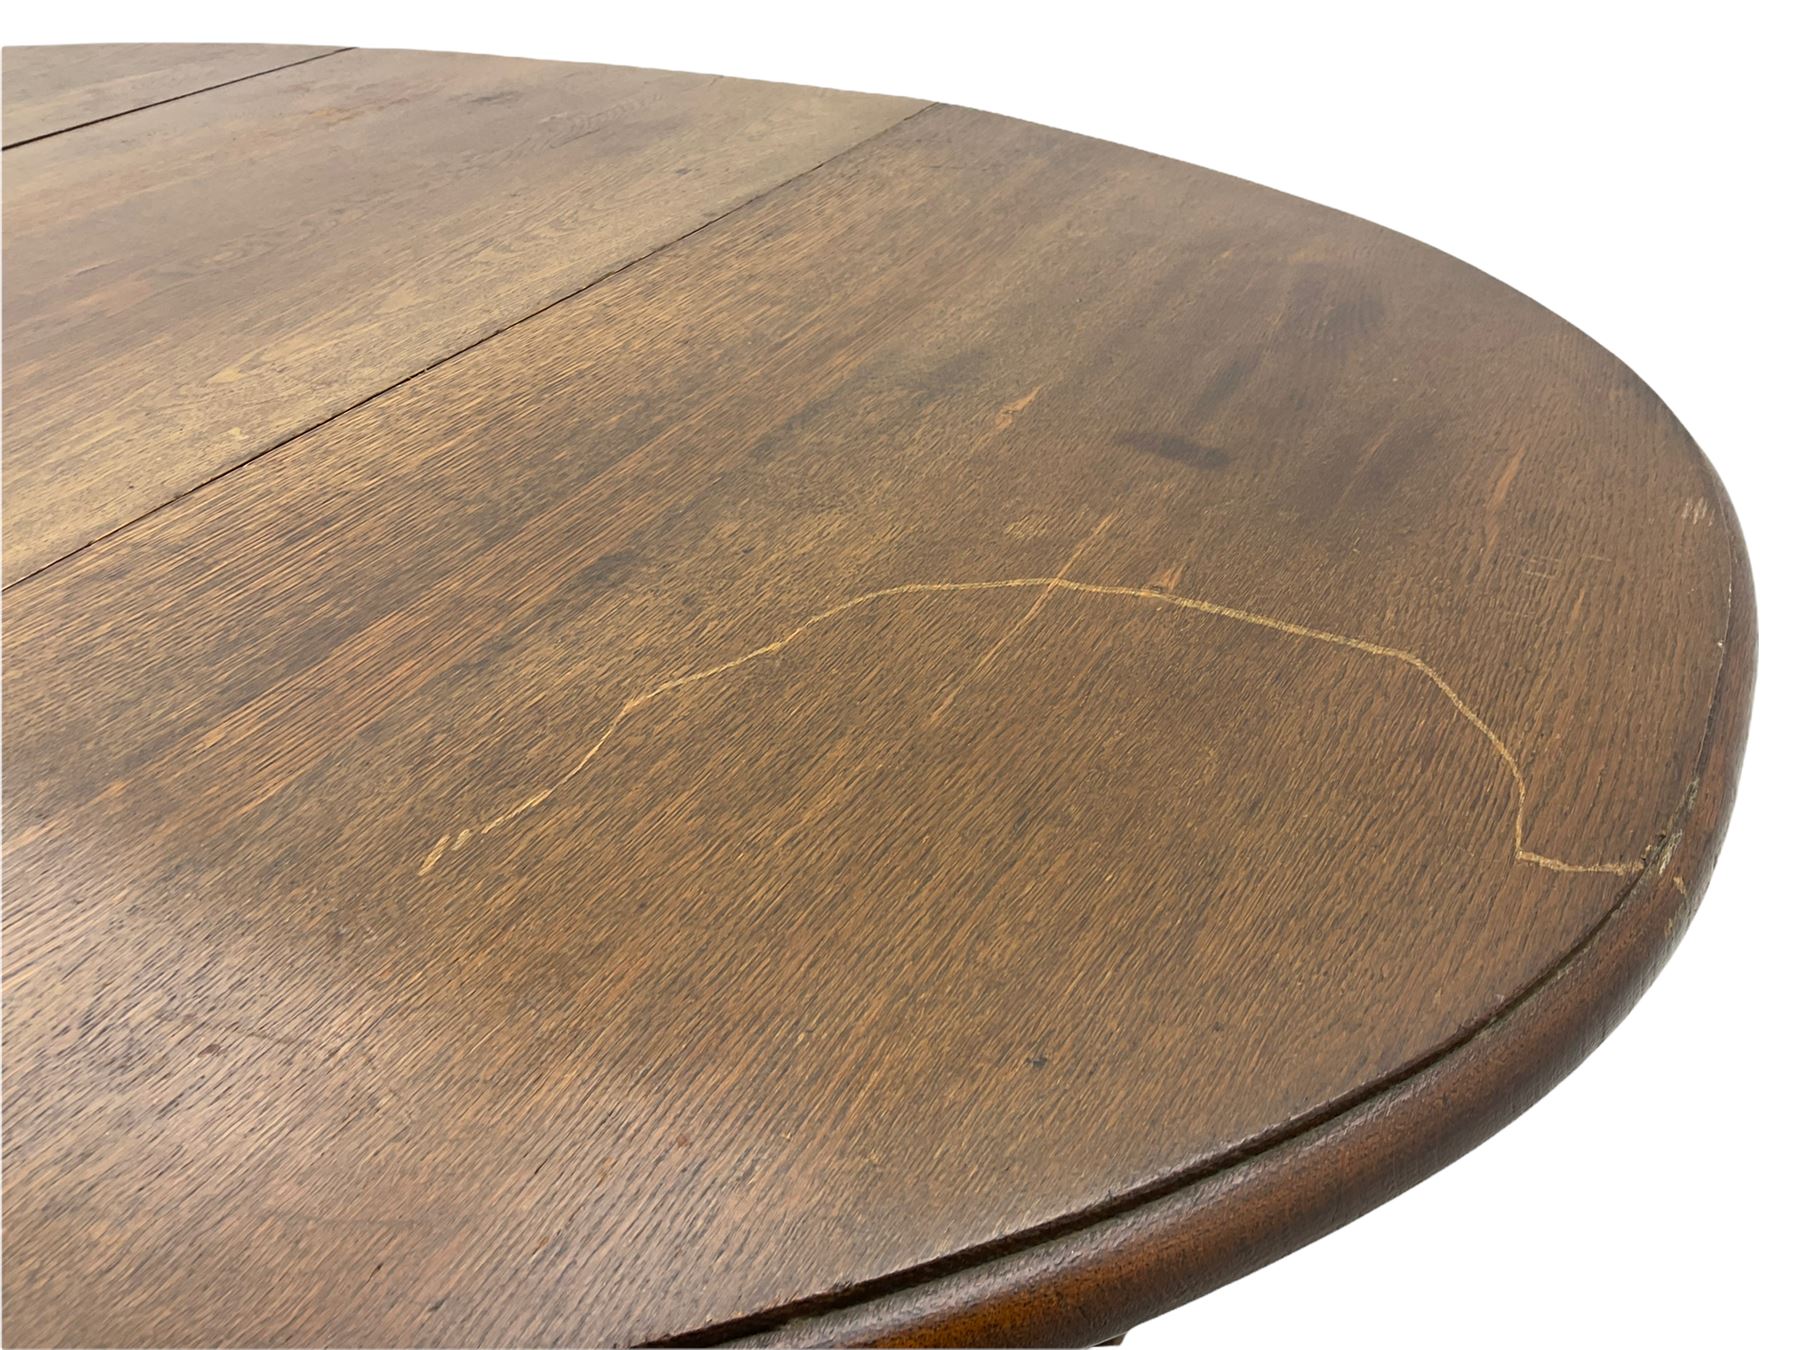 Early 20th century oak barley twist drop leaf dining table (105cm x 154cm - Image 12 of 24